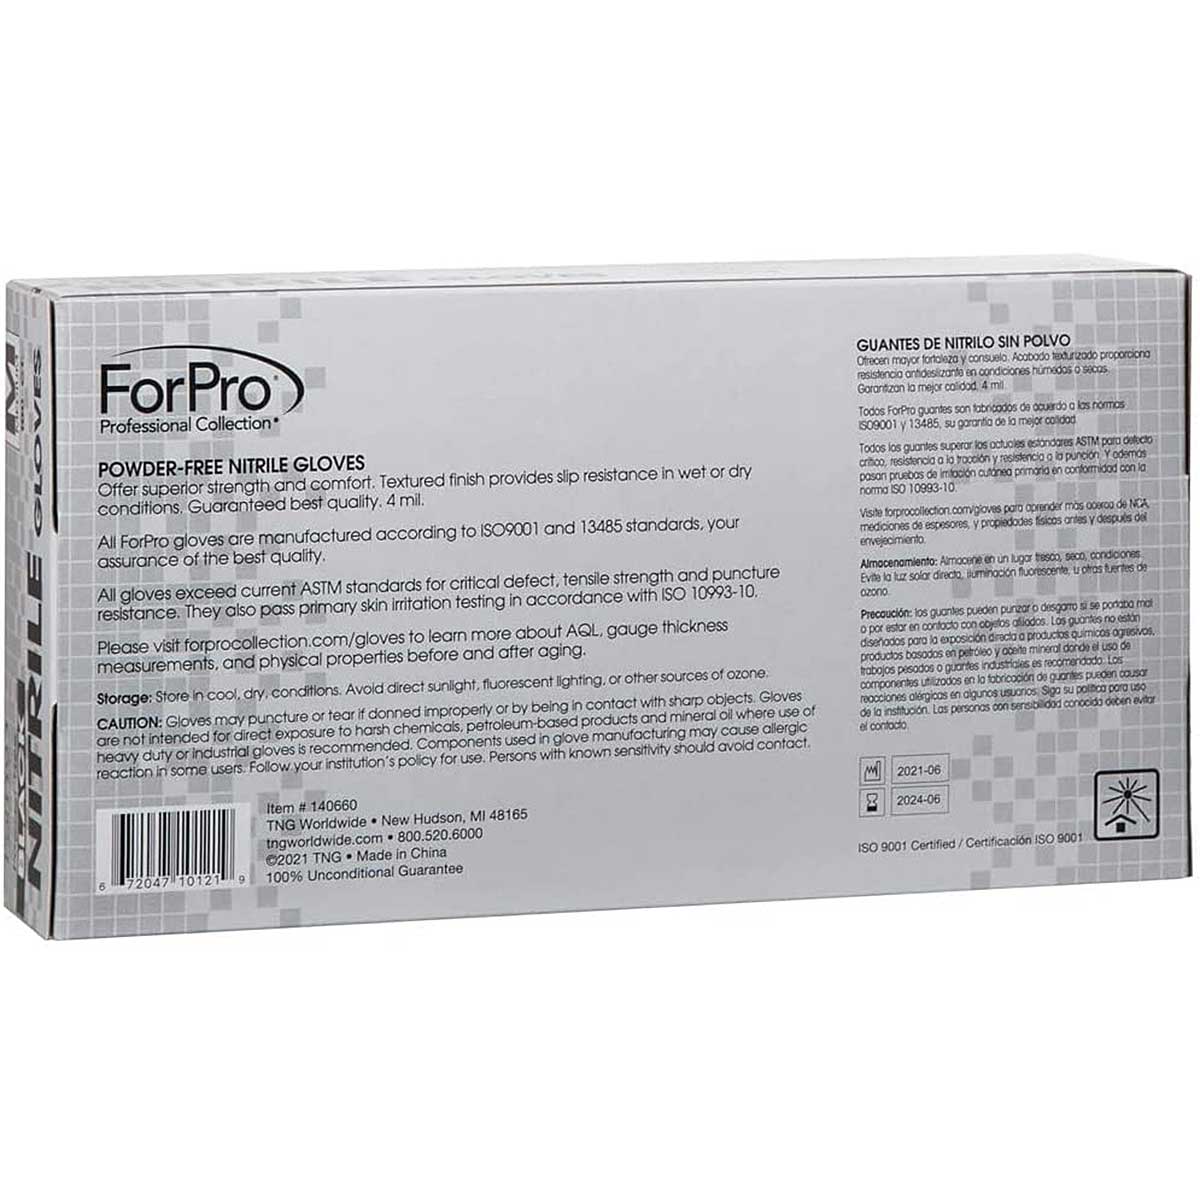 Guantes de nitrilo negro ForPro para cocina en tamaño mediano, caja con 100 piezas"